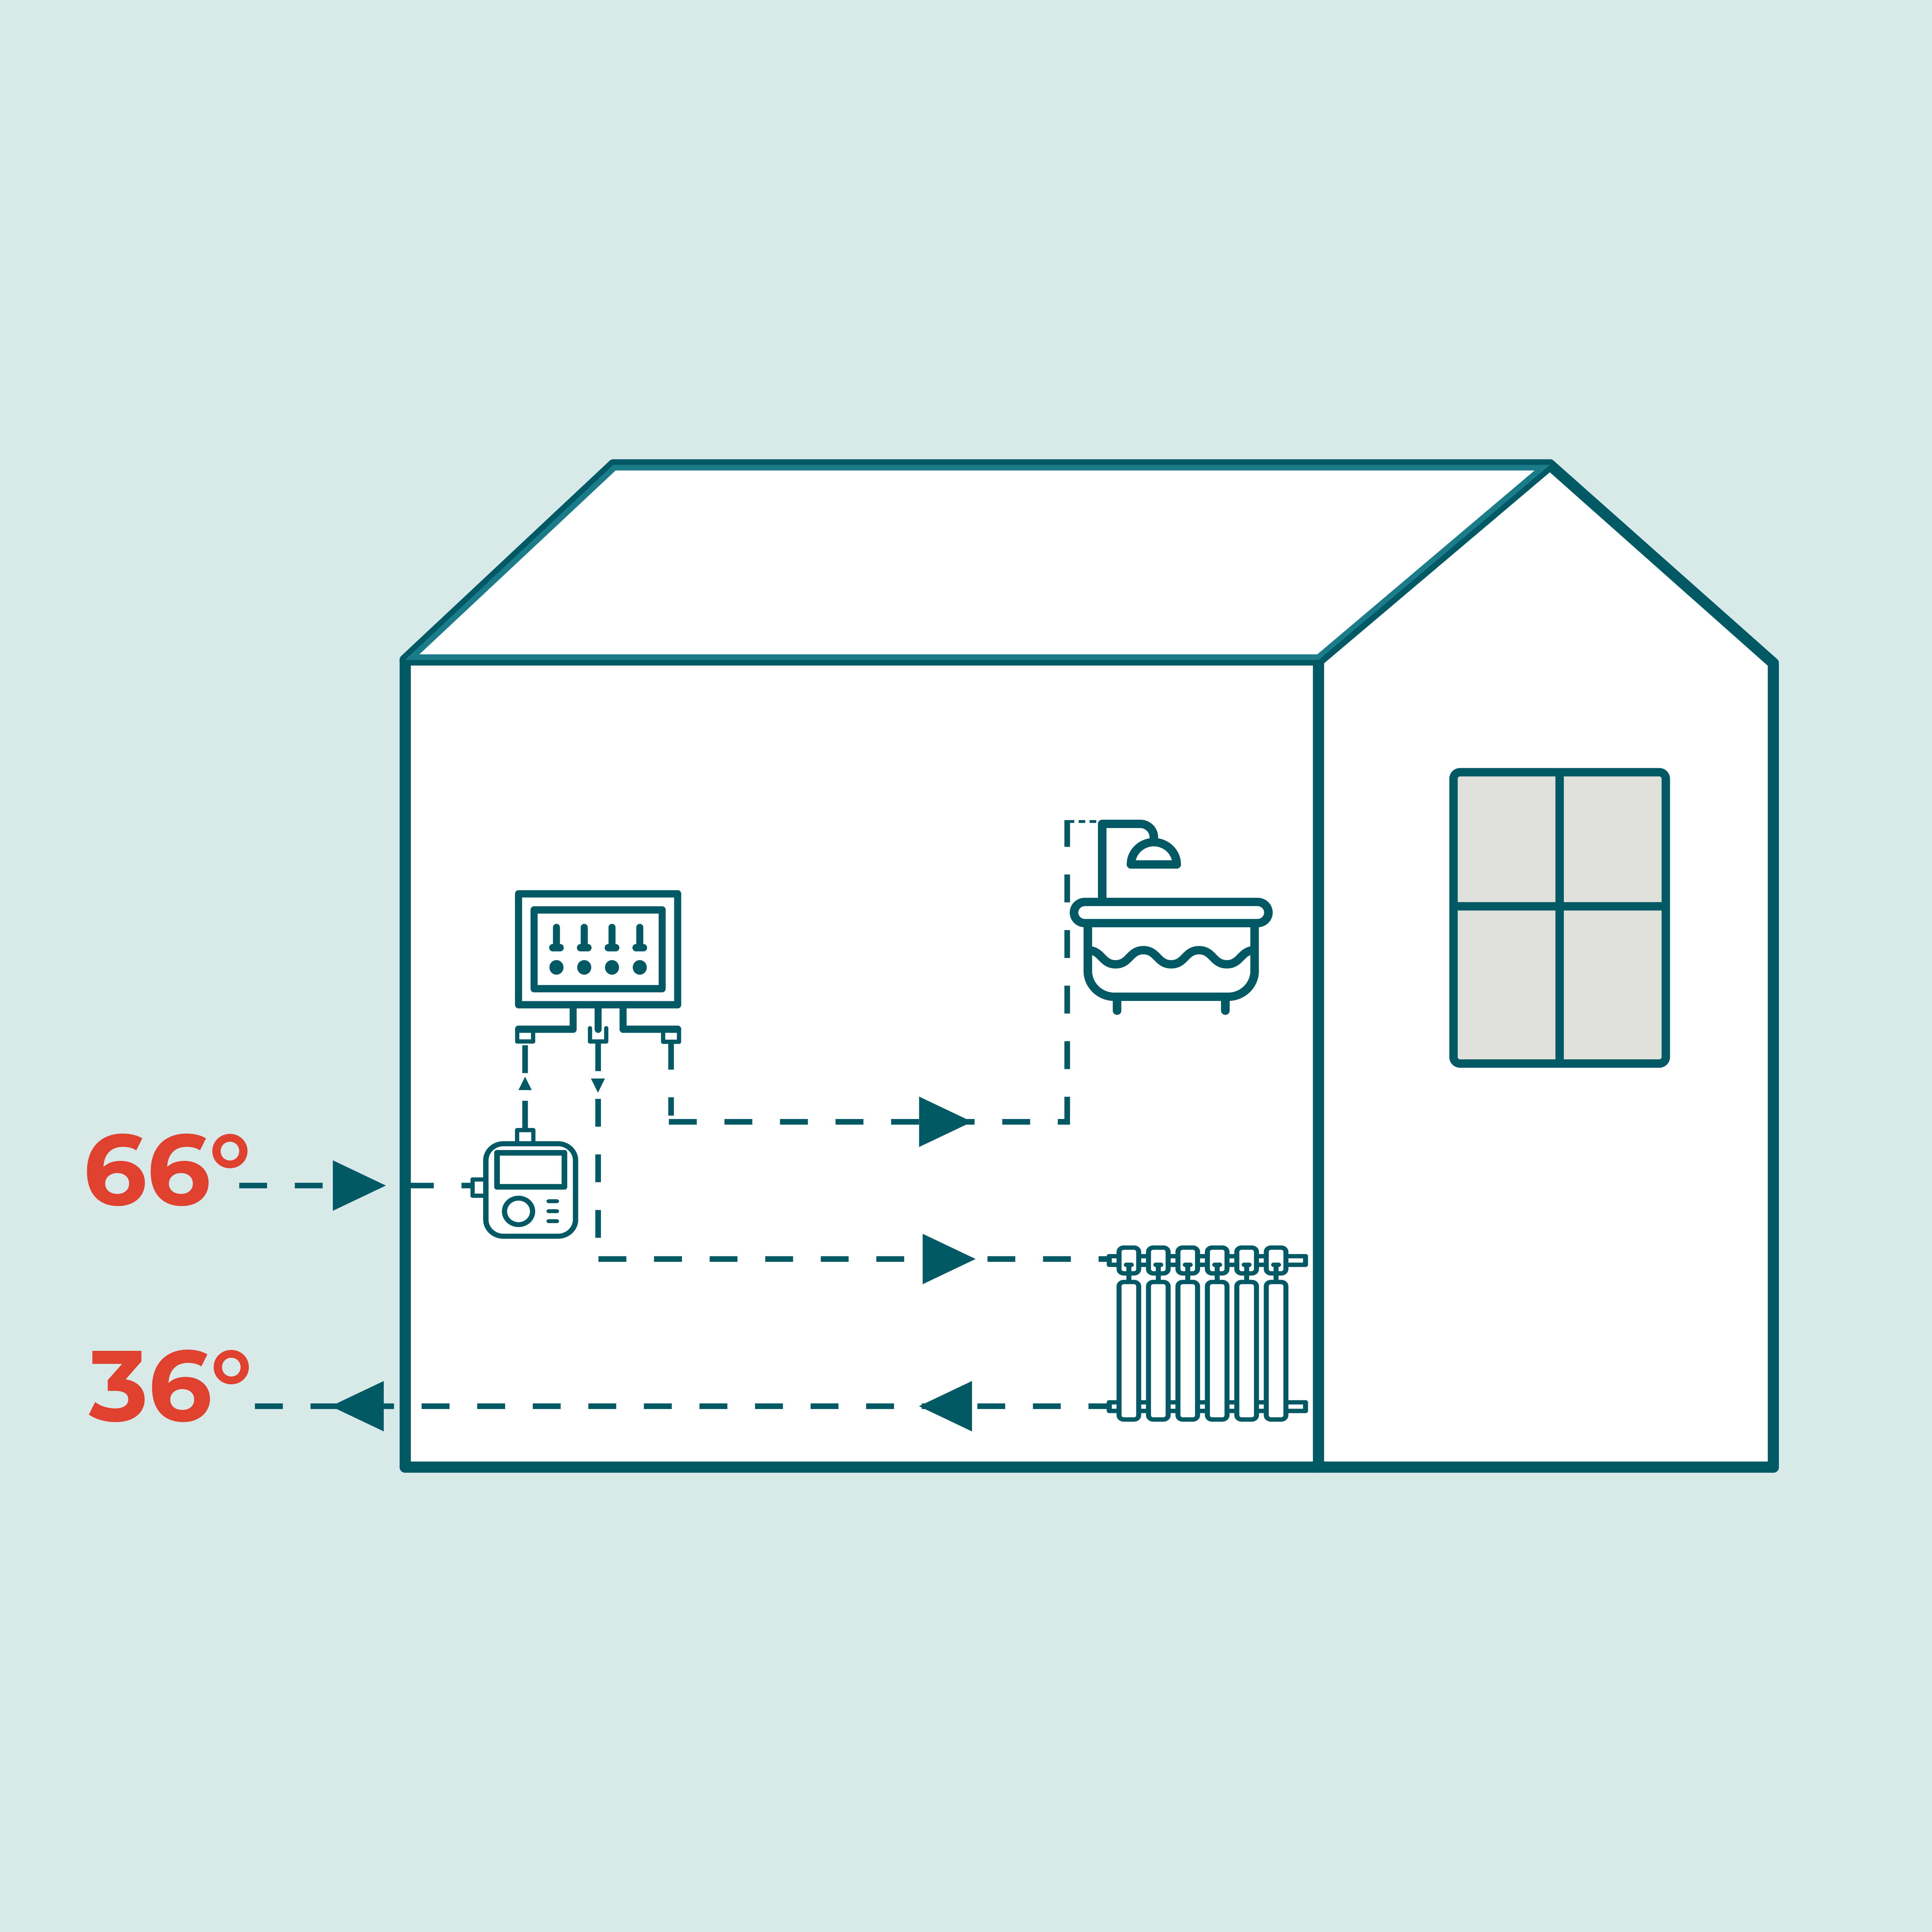 Billedet viser en illustration, der illustrer at fjernvarmevandet kan komme ind i en bolig på 66 grader og sendes retur fra boligen med 36 grader.